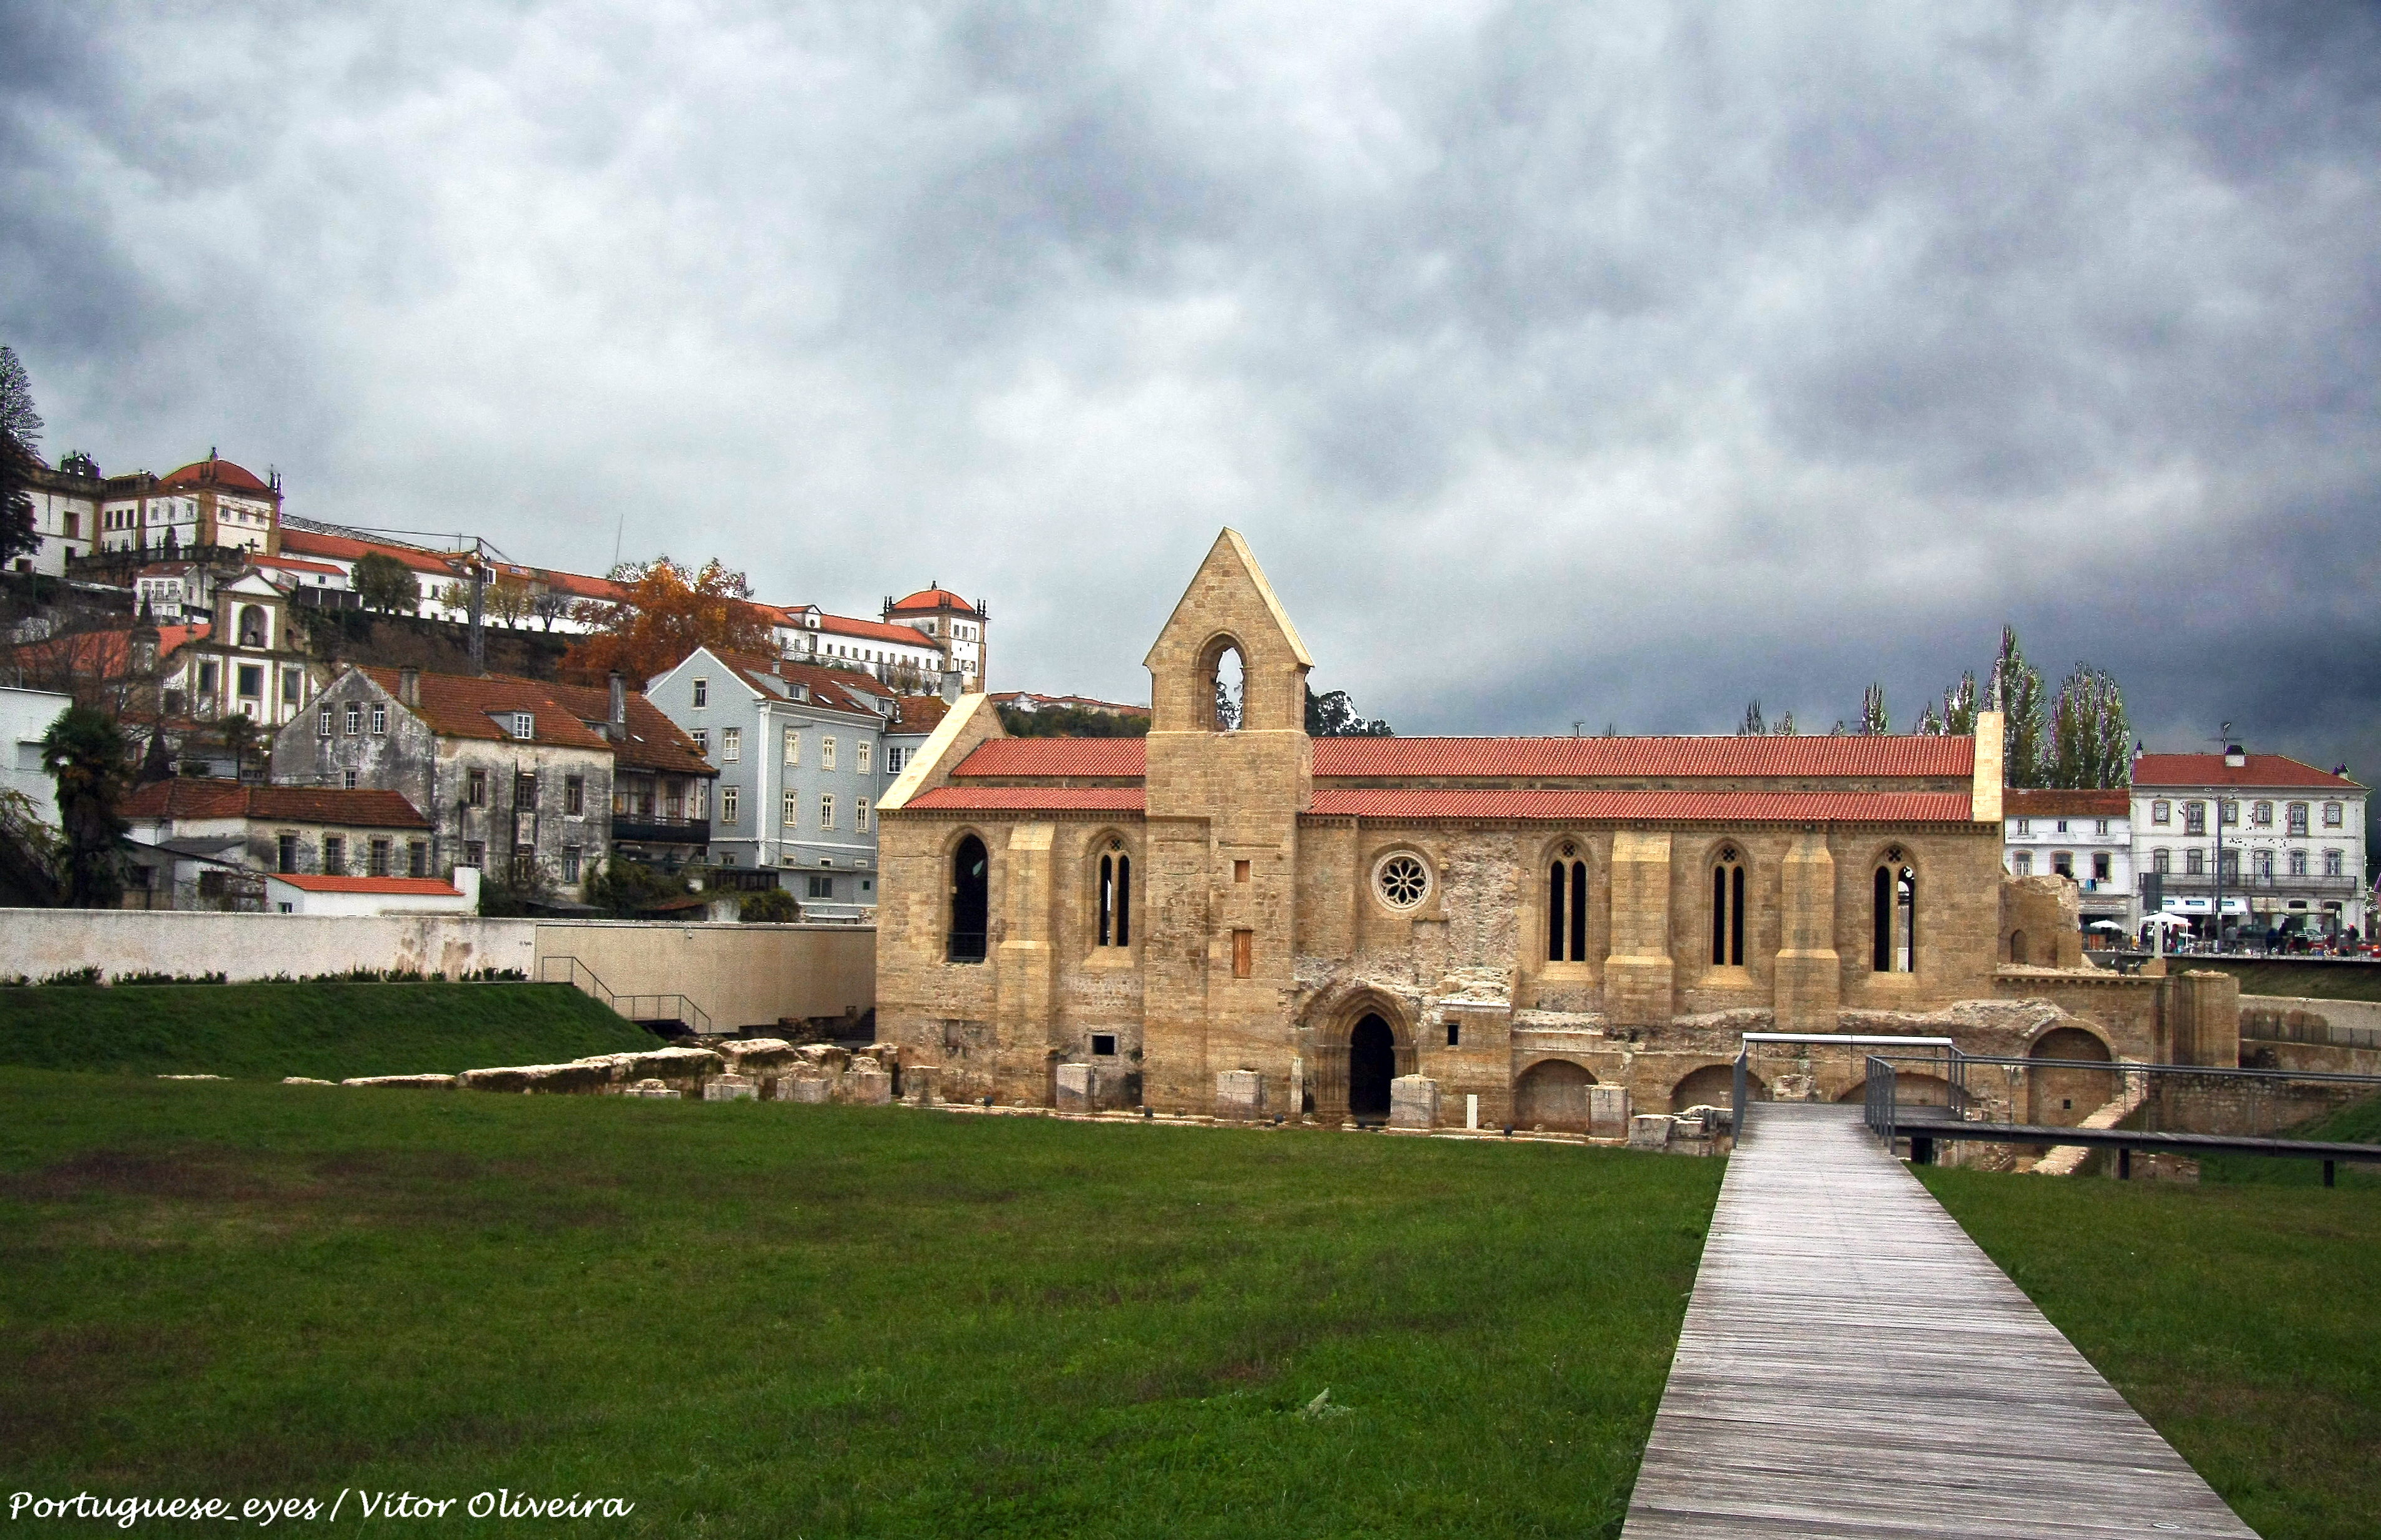 File:Mosteiro de Santa Clara-a-Velha - Coimbra - Portugal (32764665833).jpg  - Wikimedia Commons